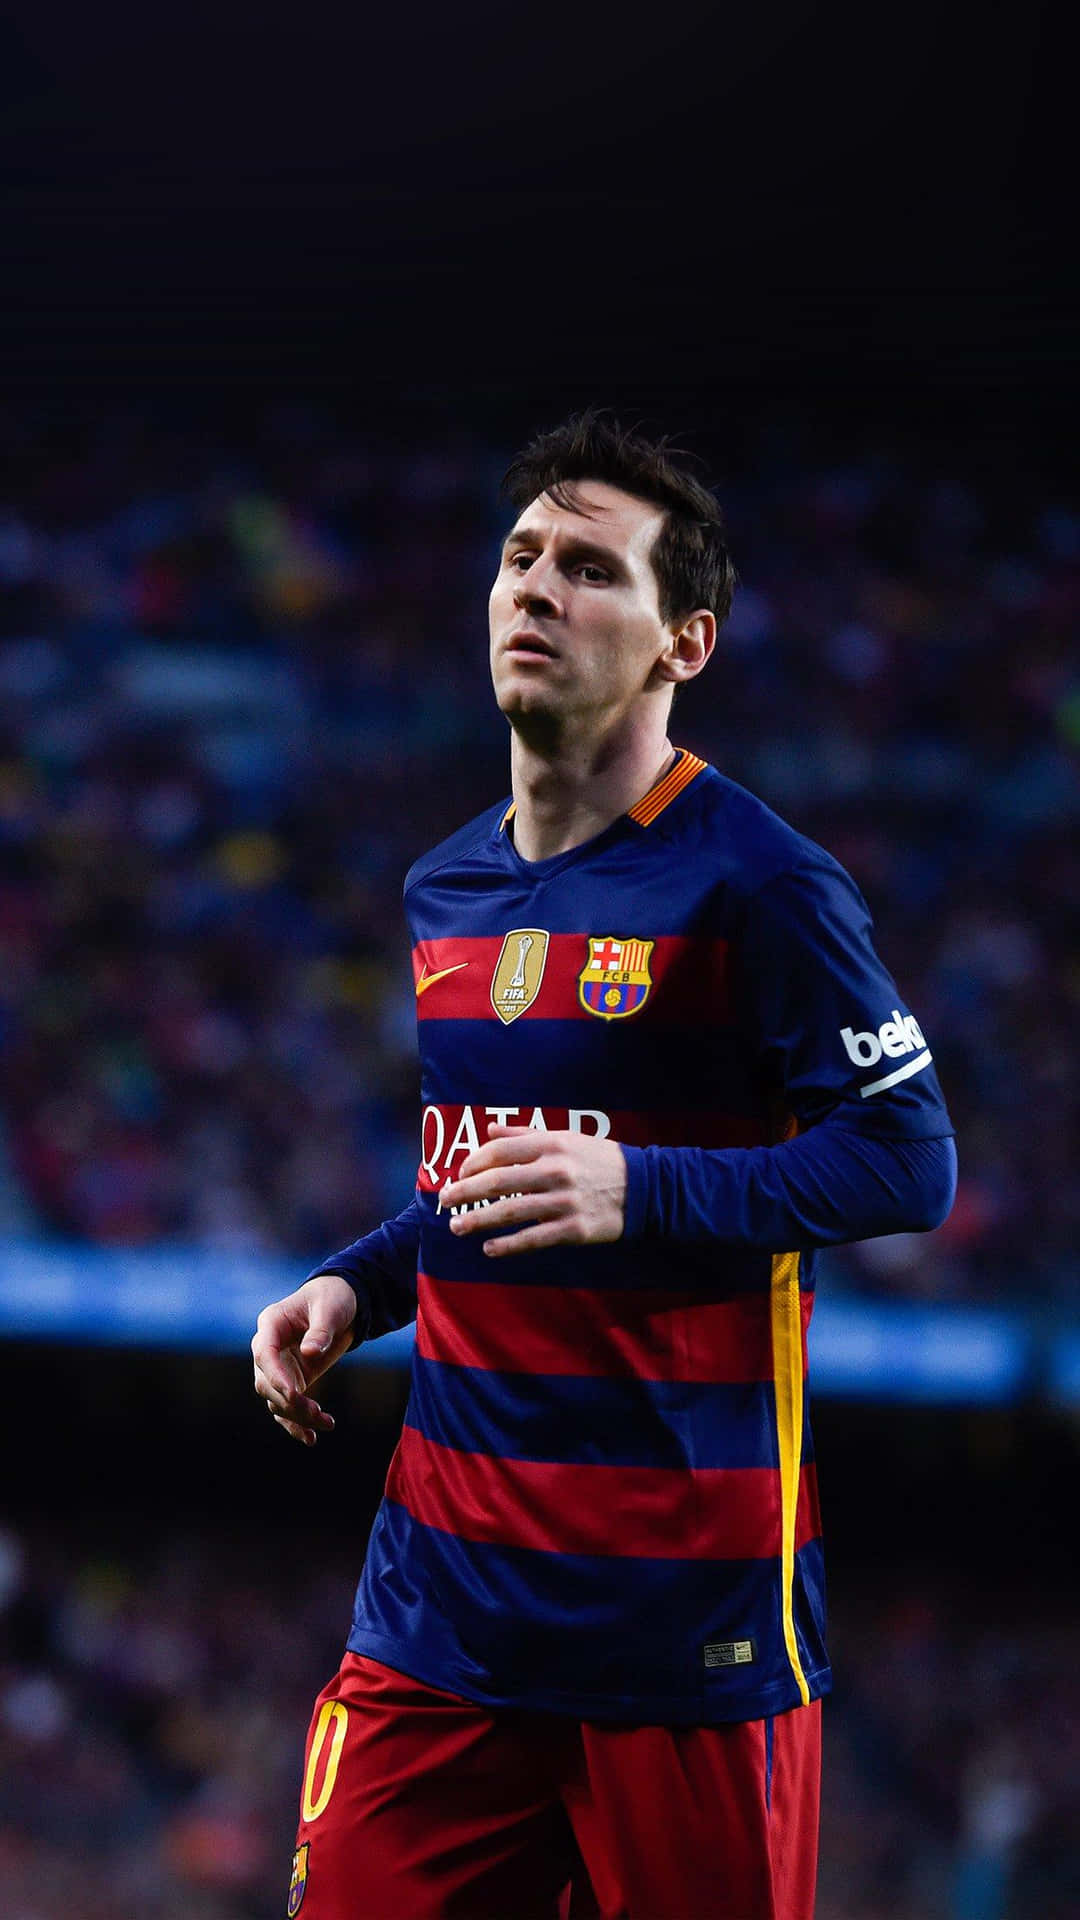 Wallpaperargentinsk Fotbollsstjärna Lionel Messi Är Ansiktet Av Den Nya Iphone-bakgrundsbilderna. Wallpaper